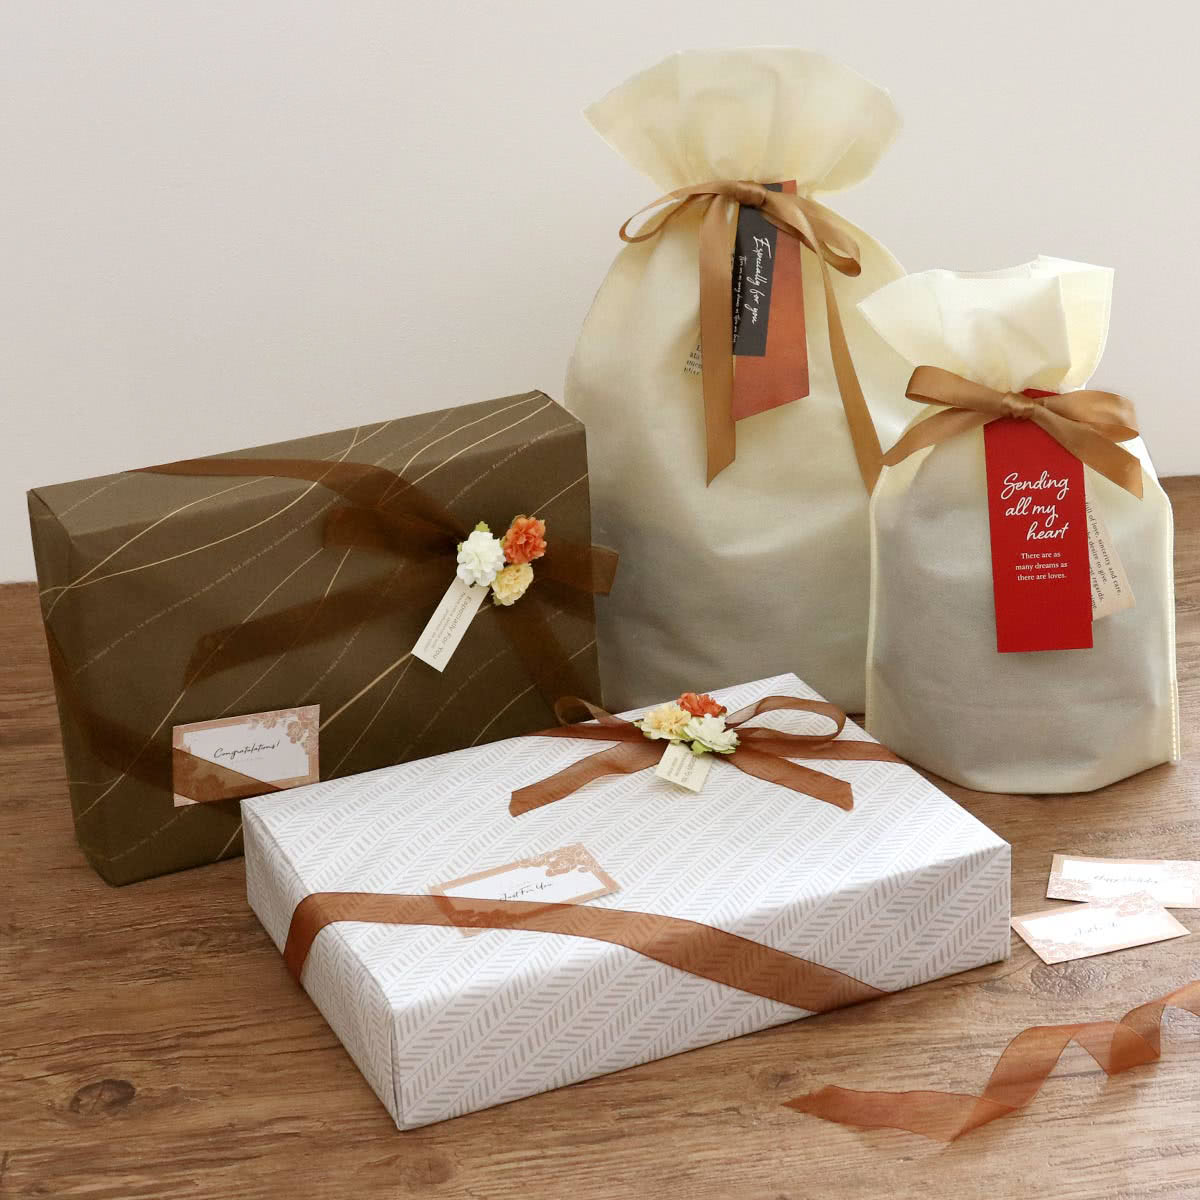 ラッピングキット ギフト 内袋付き 紙袋 包装SET ギフトラッピング 袋 wrapping プレゼント セルフラッピングキット 包装 贈り物 ラッピングセット 不織布 リボン付き 誕生日 バースデー 包む セルフ